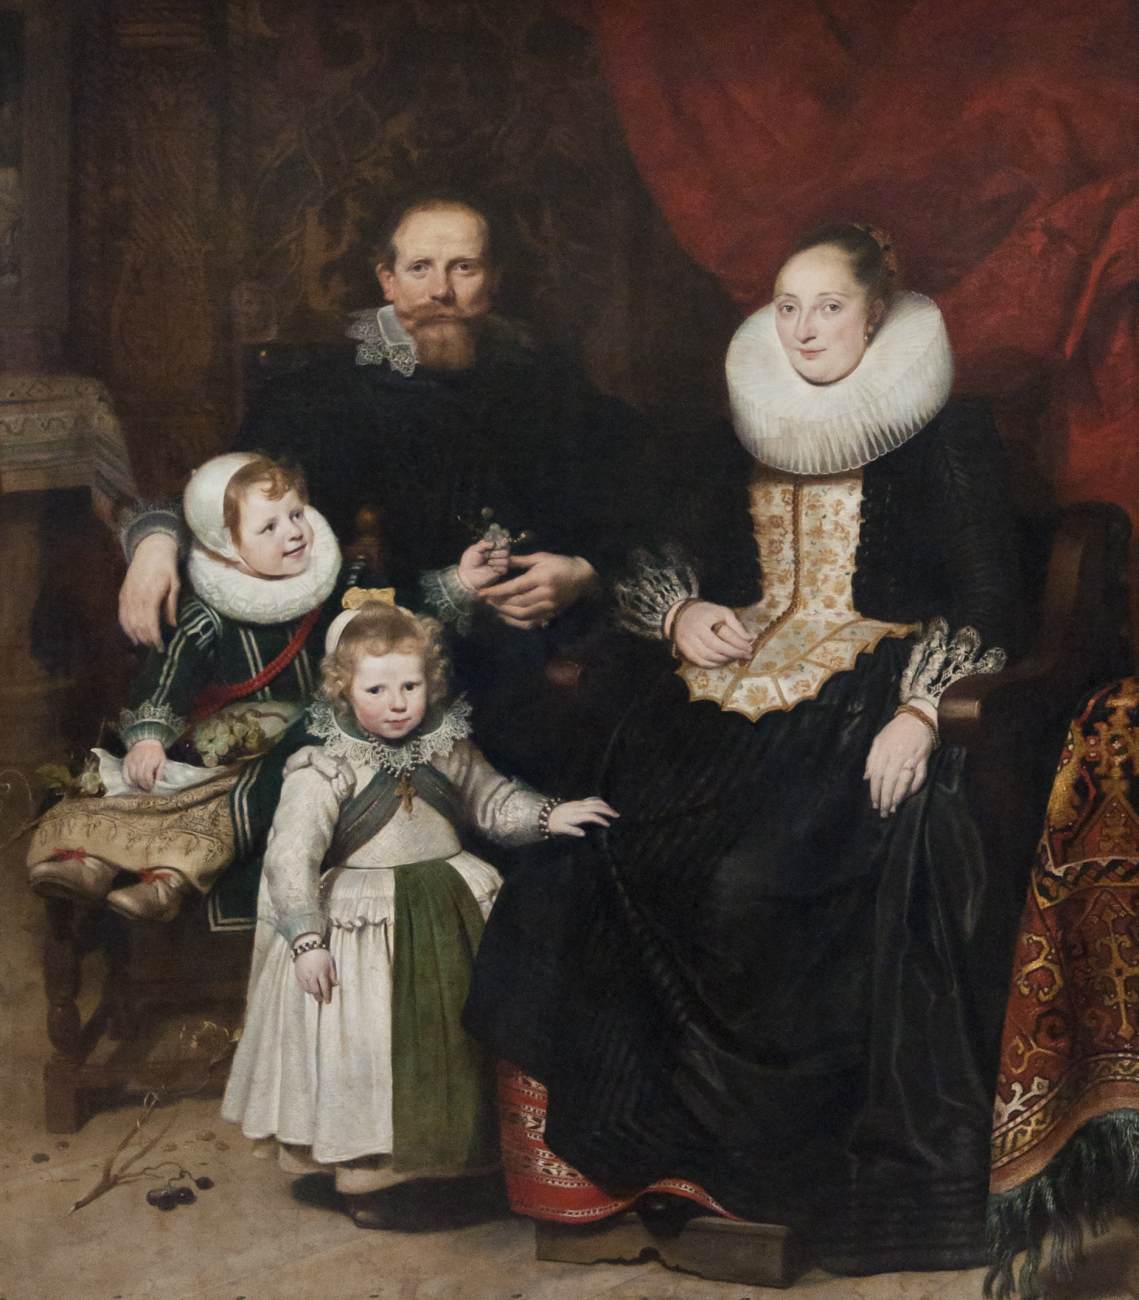 Auto-retrato do artista com sua família